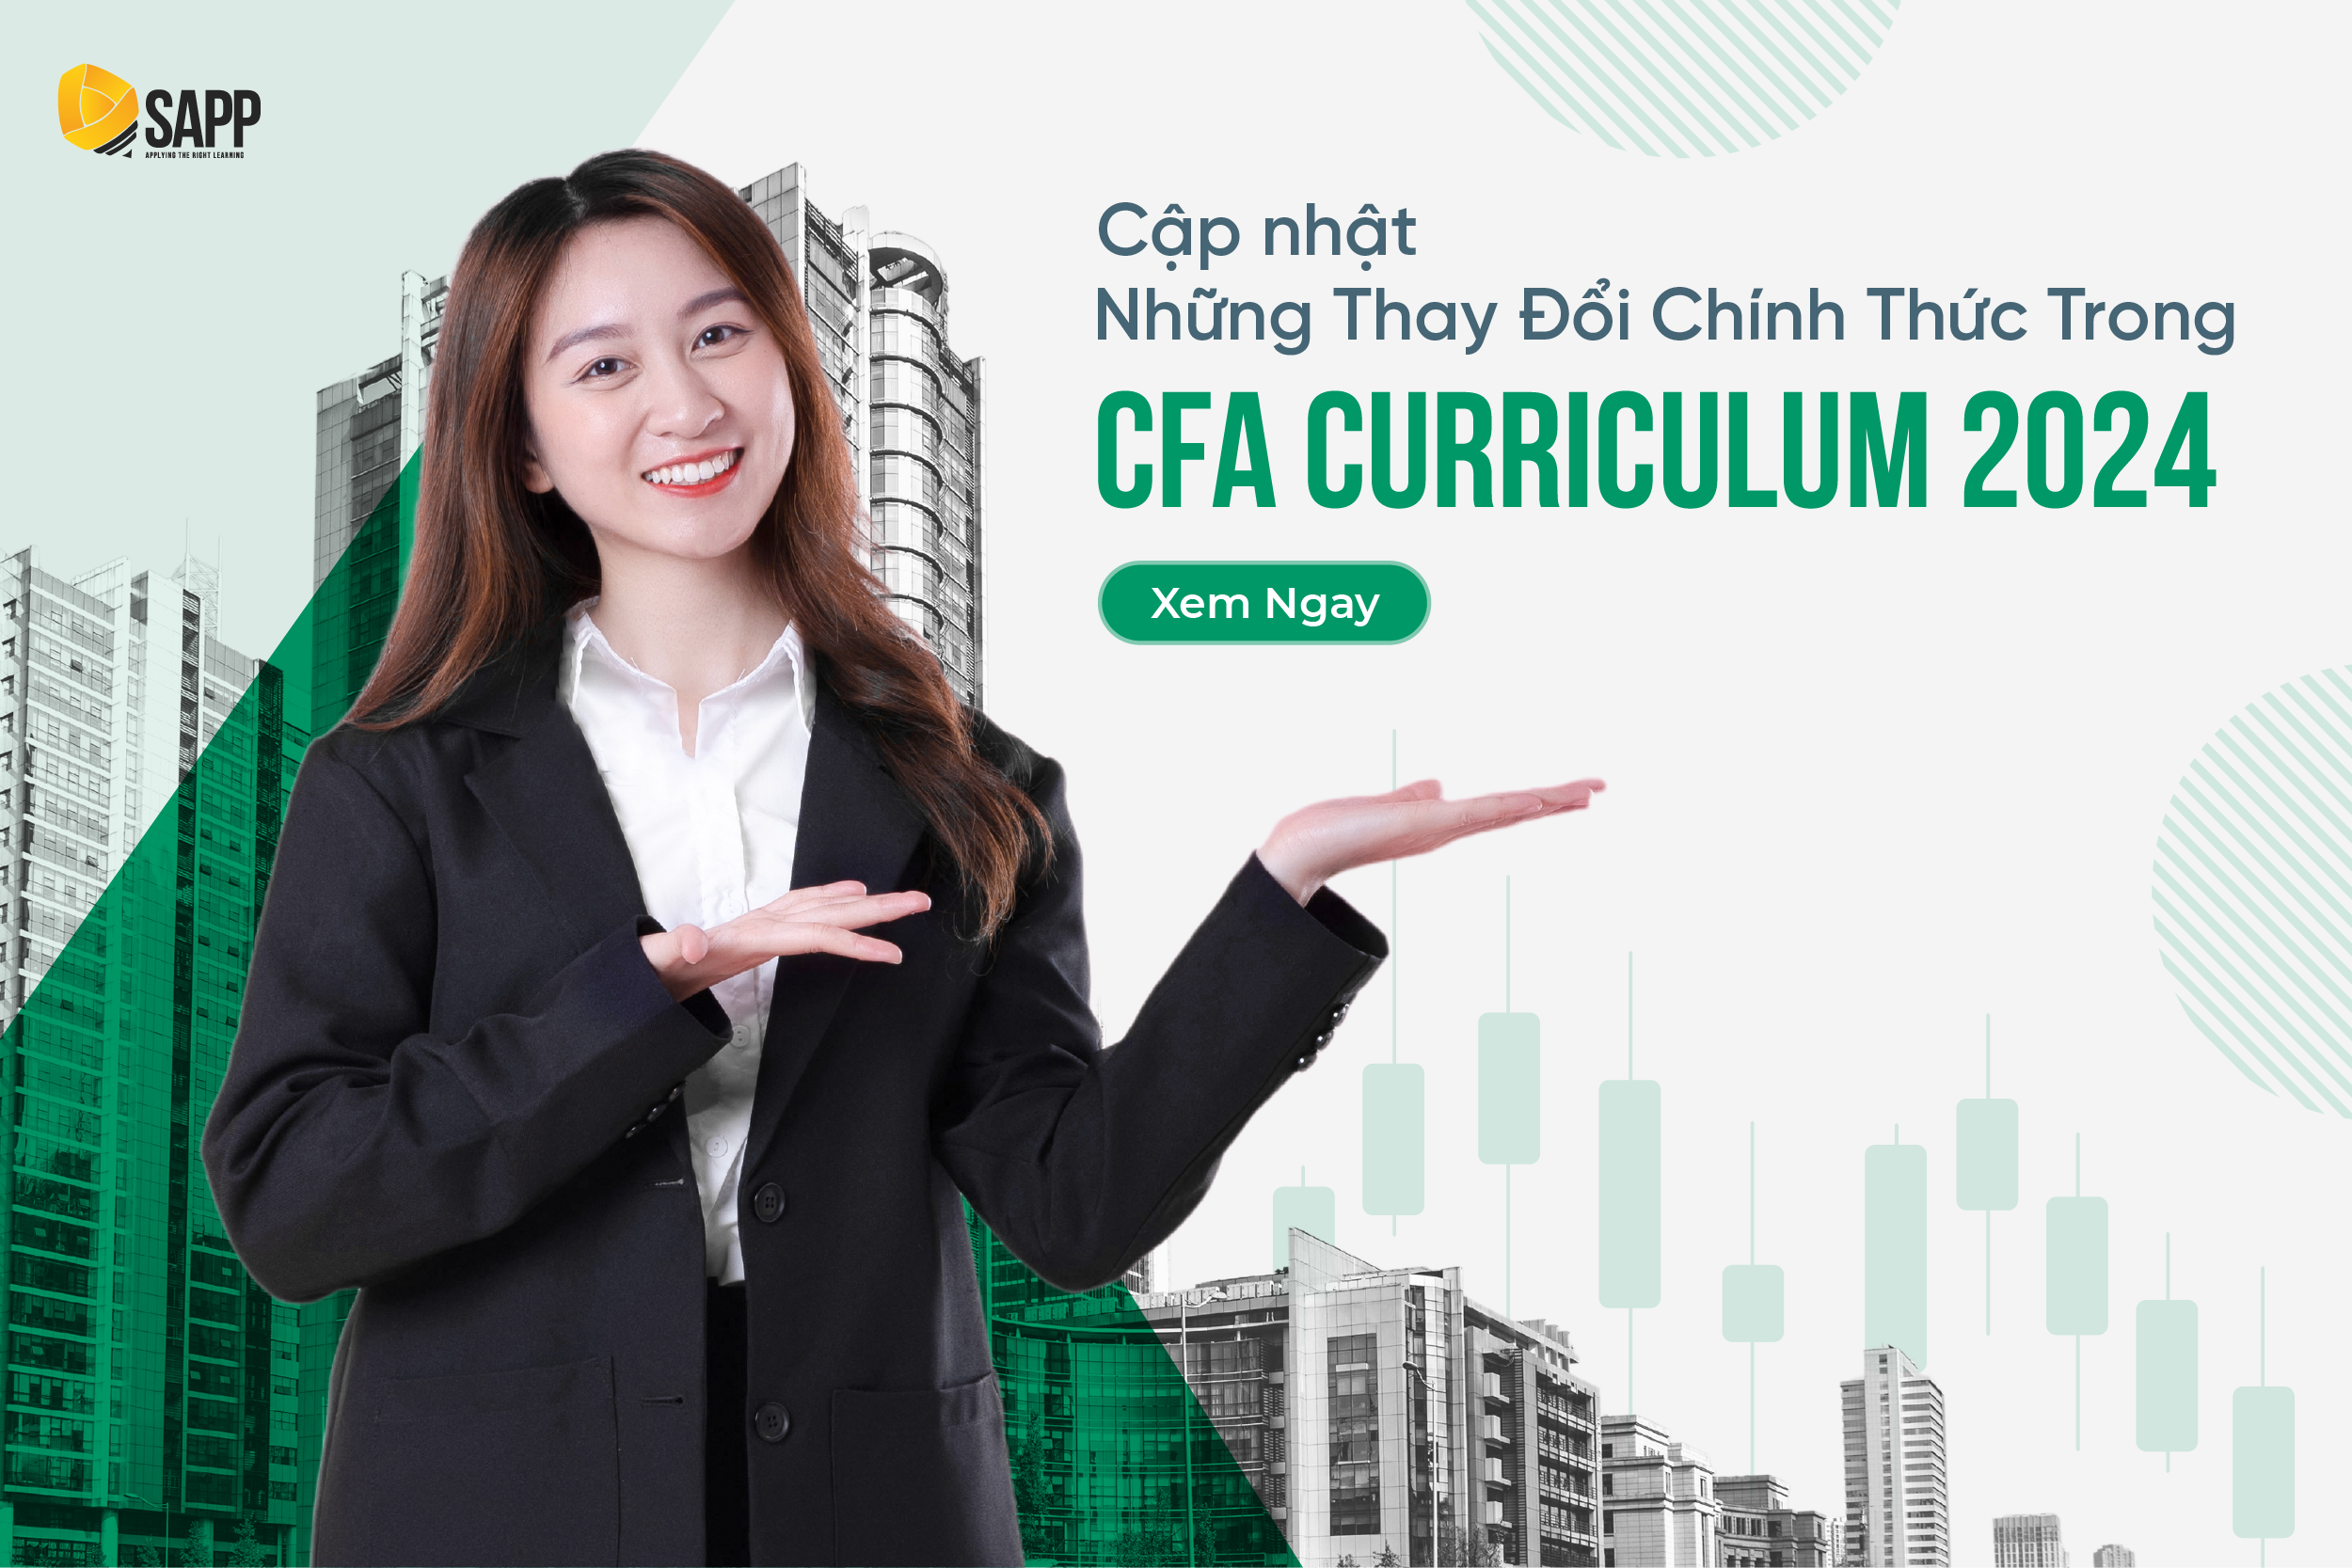 [Cập nhật] Những Thay Đổi Chính Thức Trong CFA Curriculum 2024